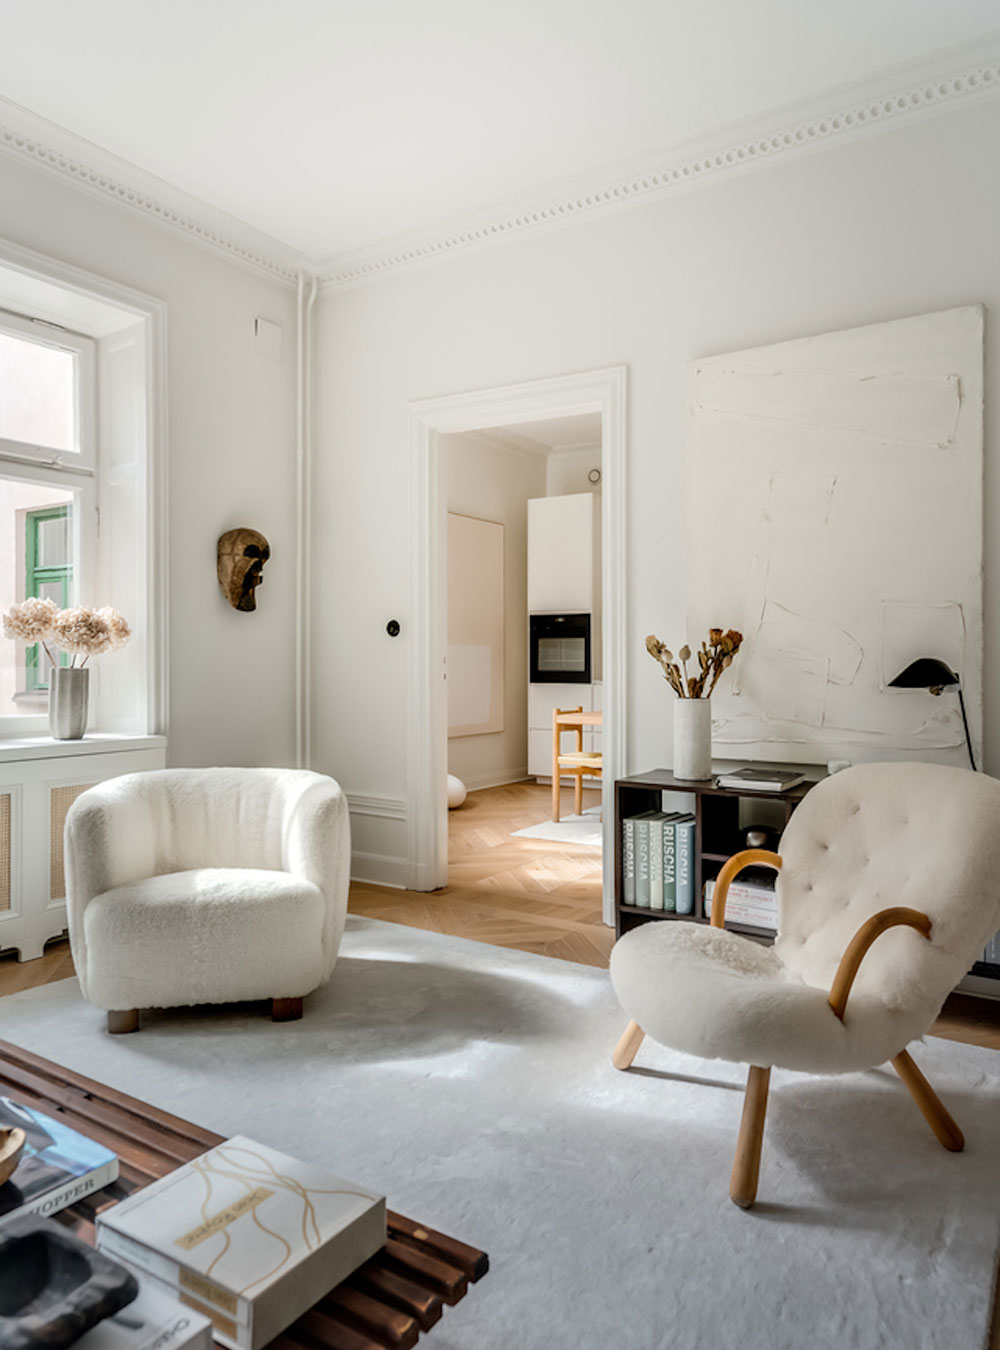 Утончённый скандинавский интерьер квартиры дизайнера в Стокгольме (62 кв. м)